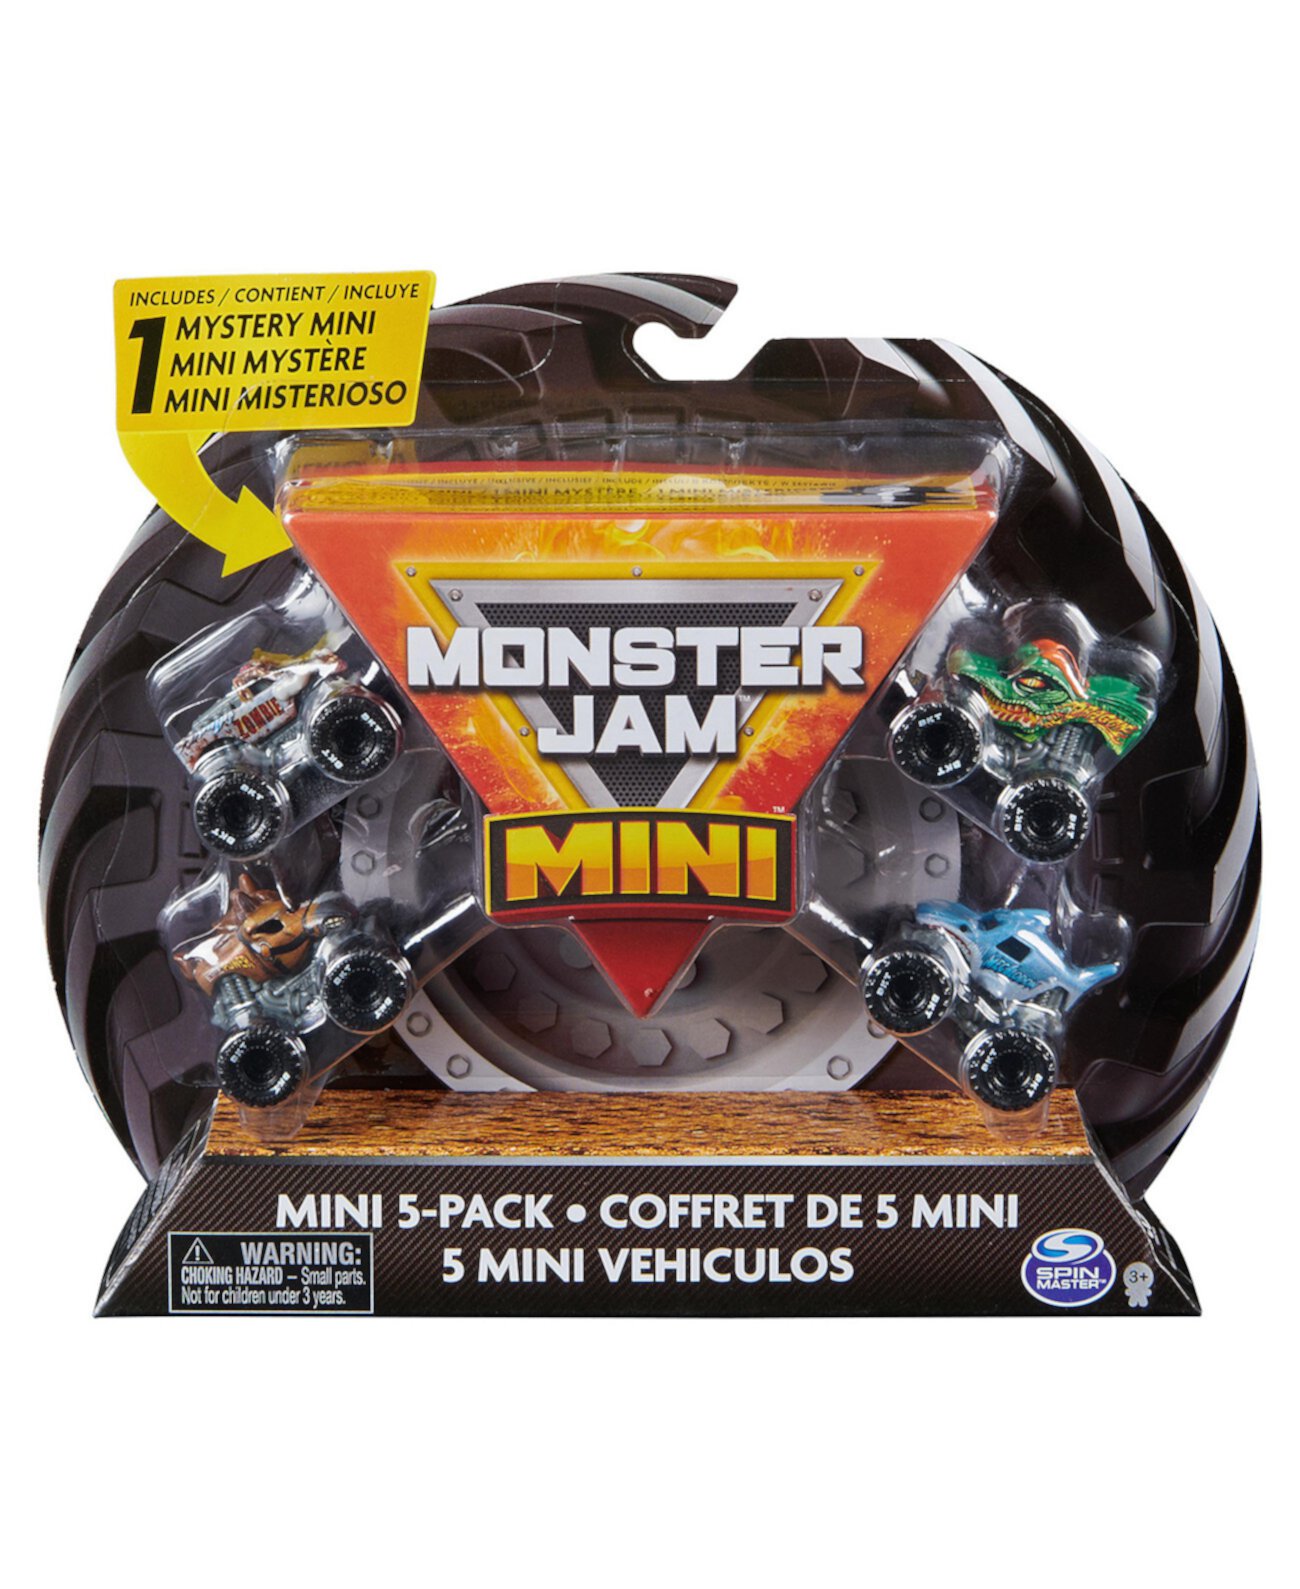 Мини-набор из 5 предметов с коллекционным монстр-траком Mystery, масштаб 1:87 Monster Jam